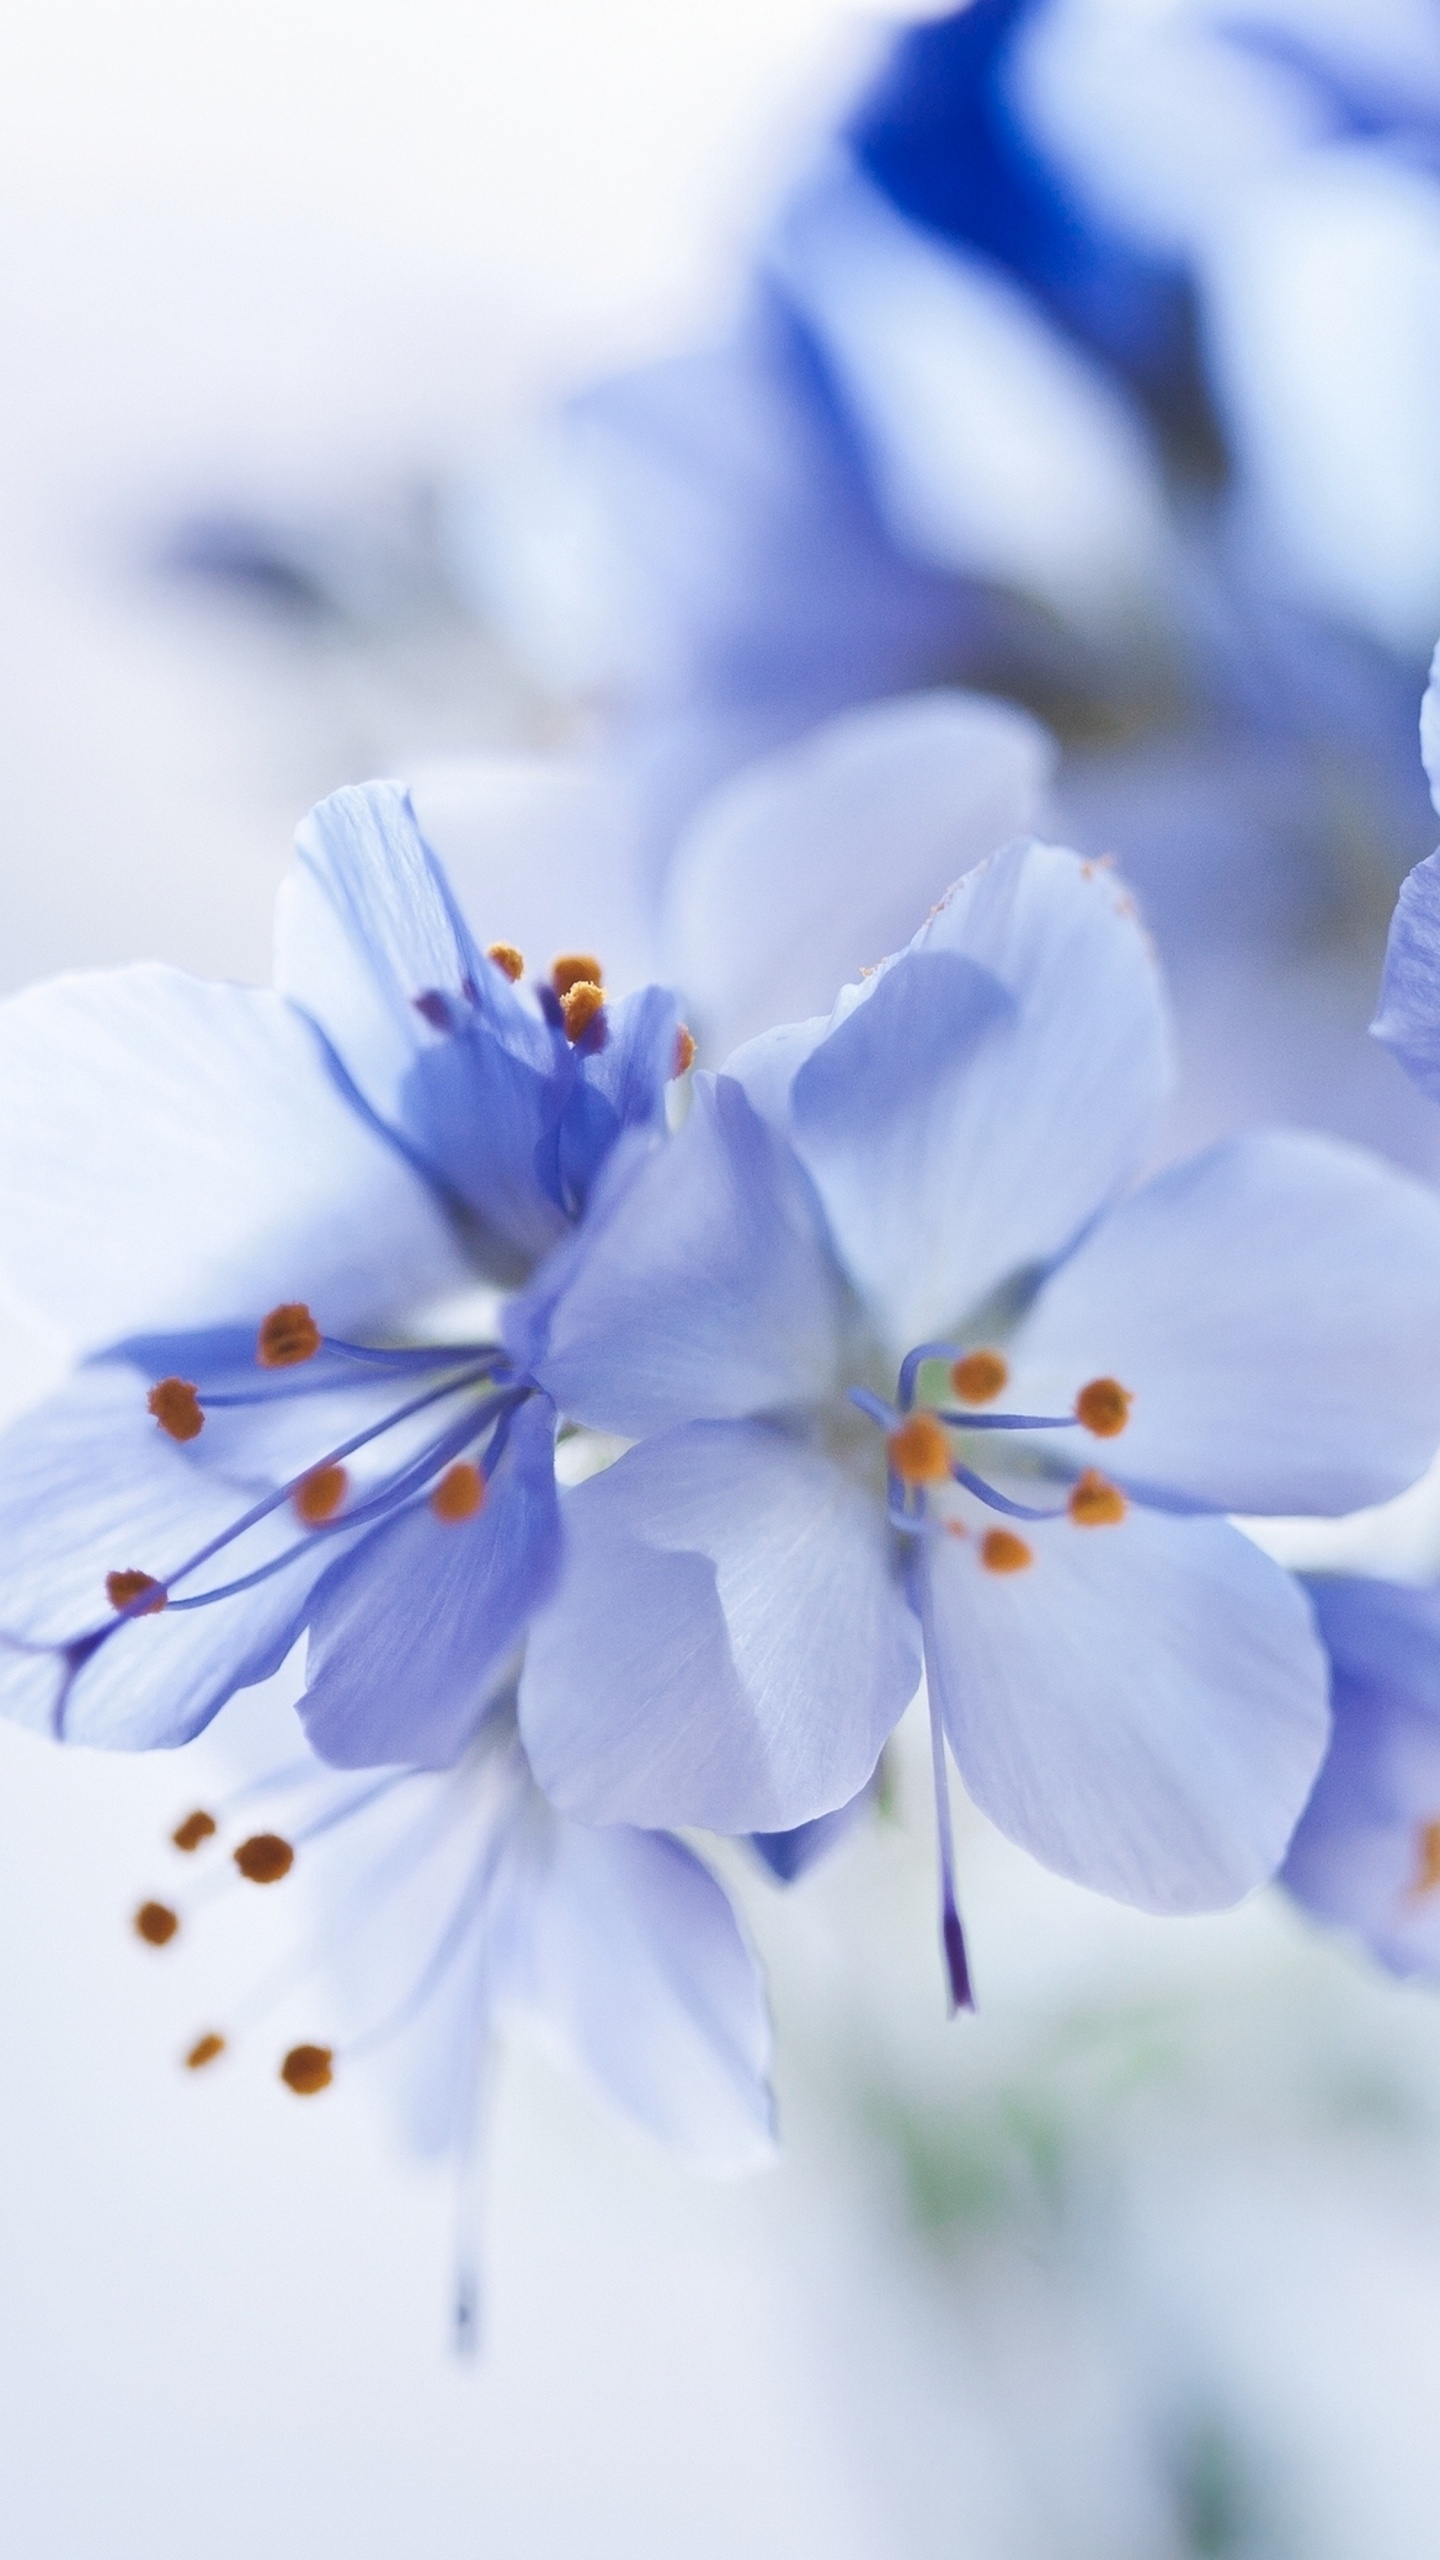 Fleurs Blanches et Bleues Dans L'objectif à Basculement. Wallpaper in 1440x2560 Resolution